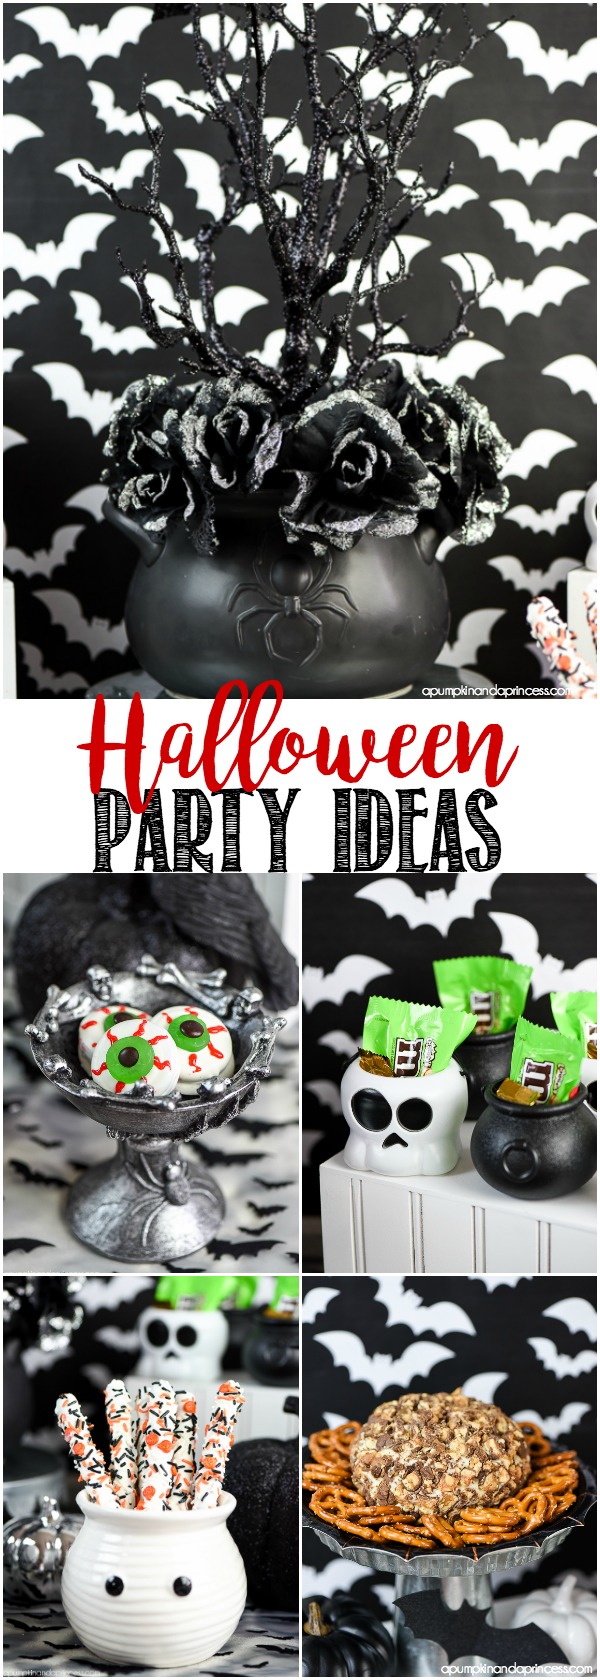 Ideas para fiestas de Halloween: comida, decoraciones y obsequios para fiestas.